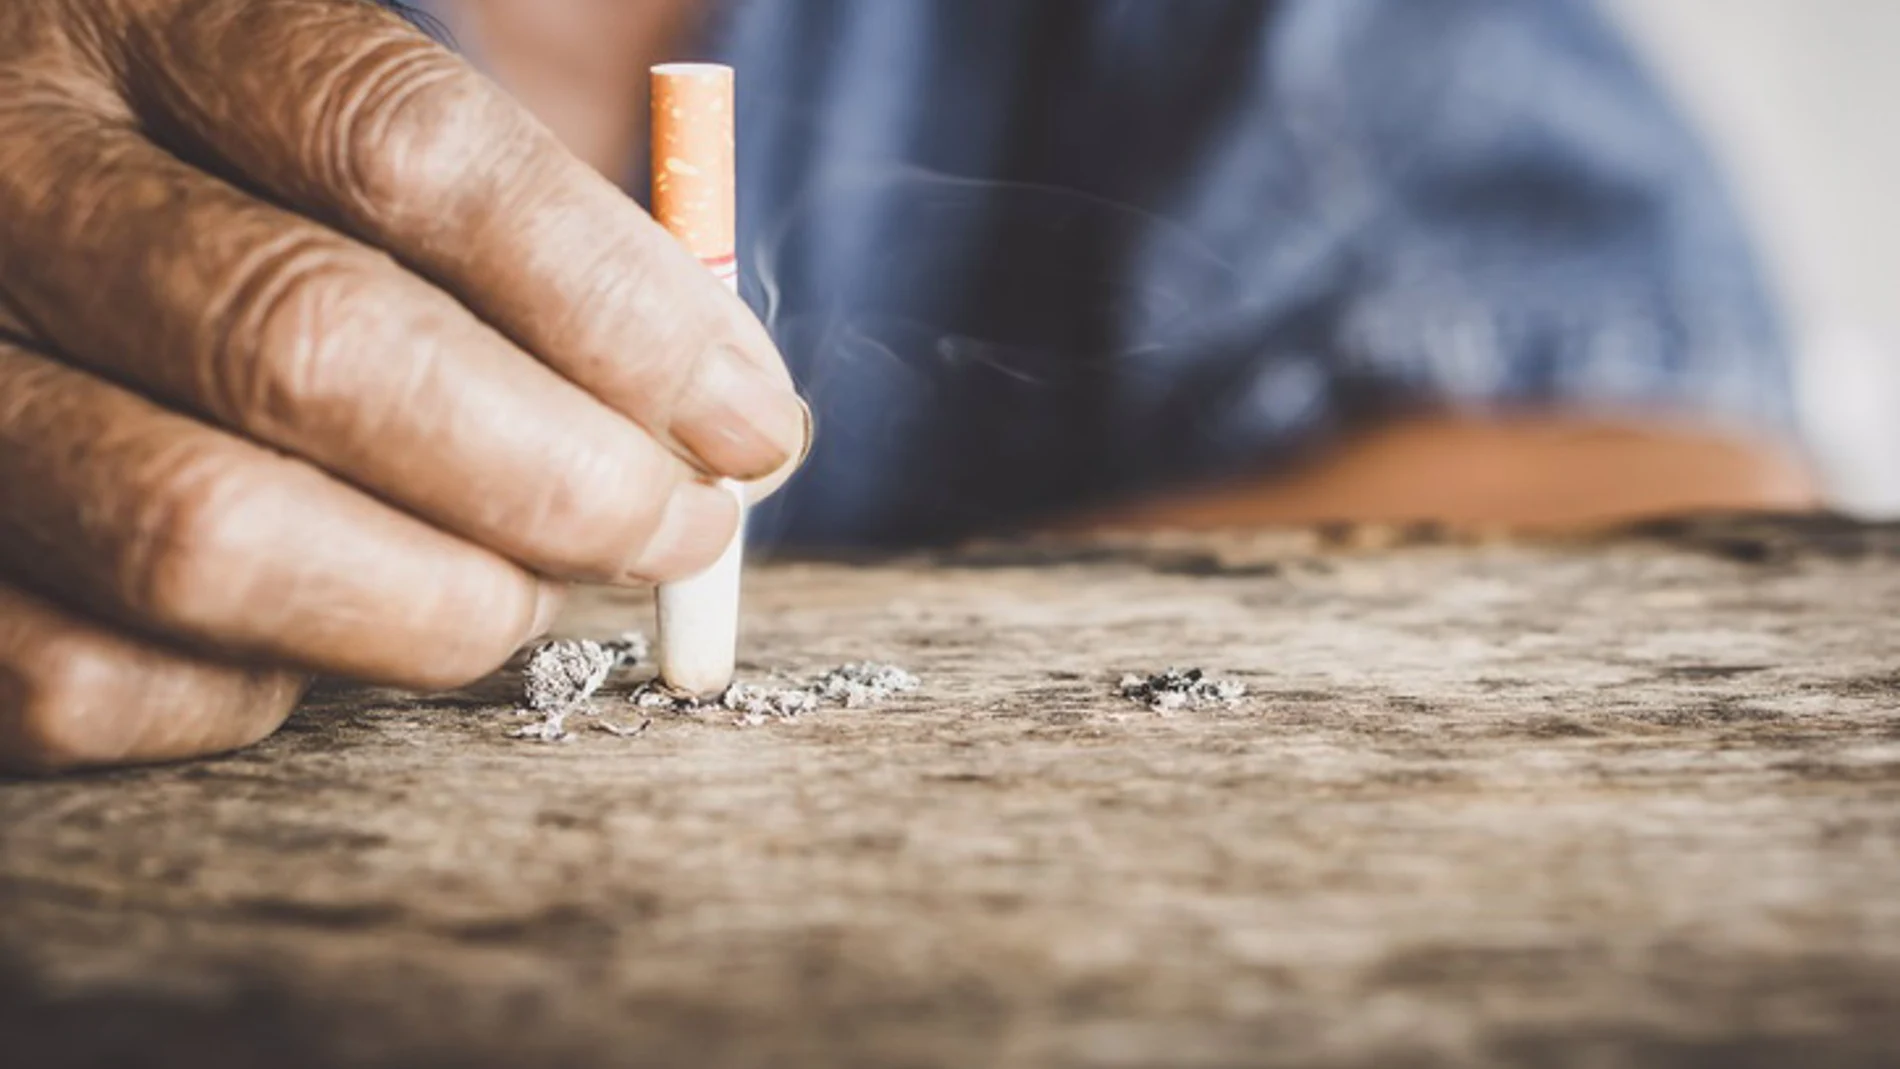 Dejar de fumar a cualquier edad aporta grandes beneficios para la salud y rápidamente, según estudio